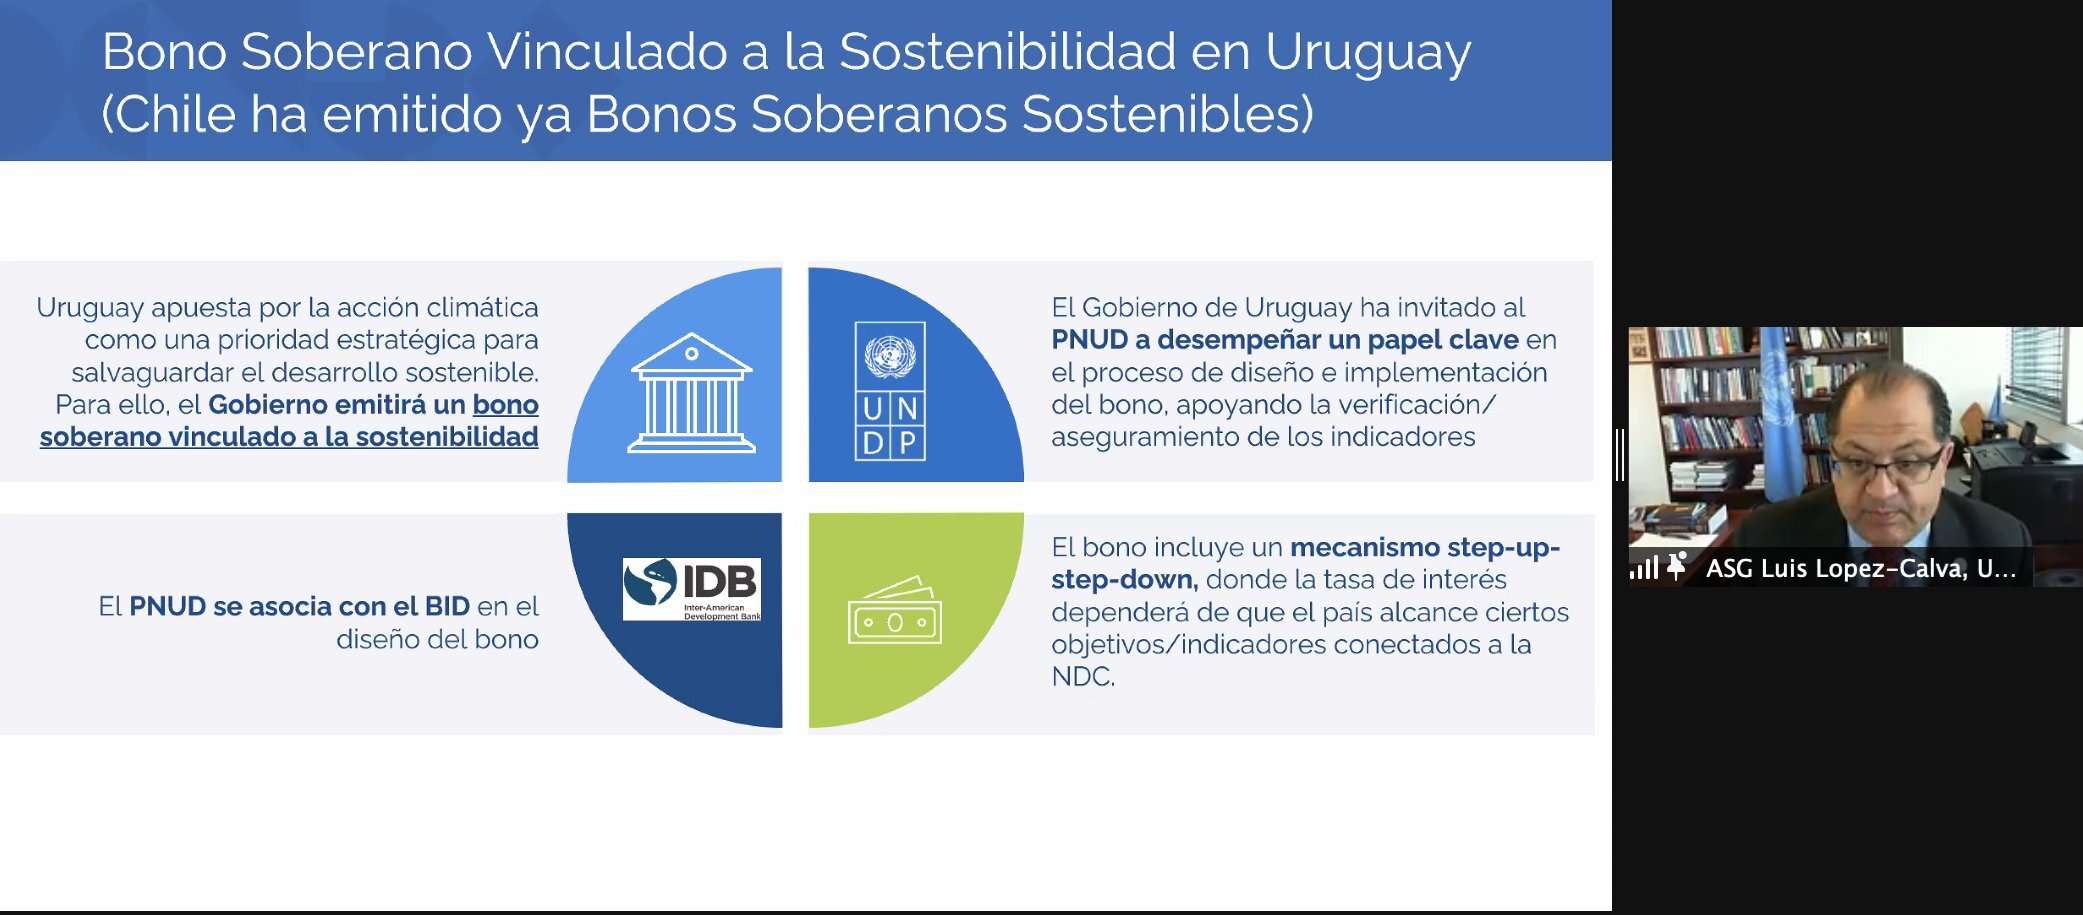 Presentación de Luis Felipe López-Calva sobre Bono Soberano Vinculado a la Sostenibilidad en Uruguay